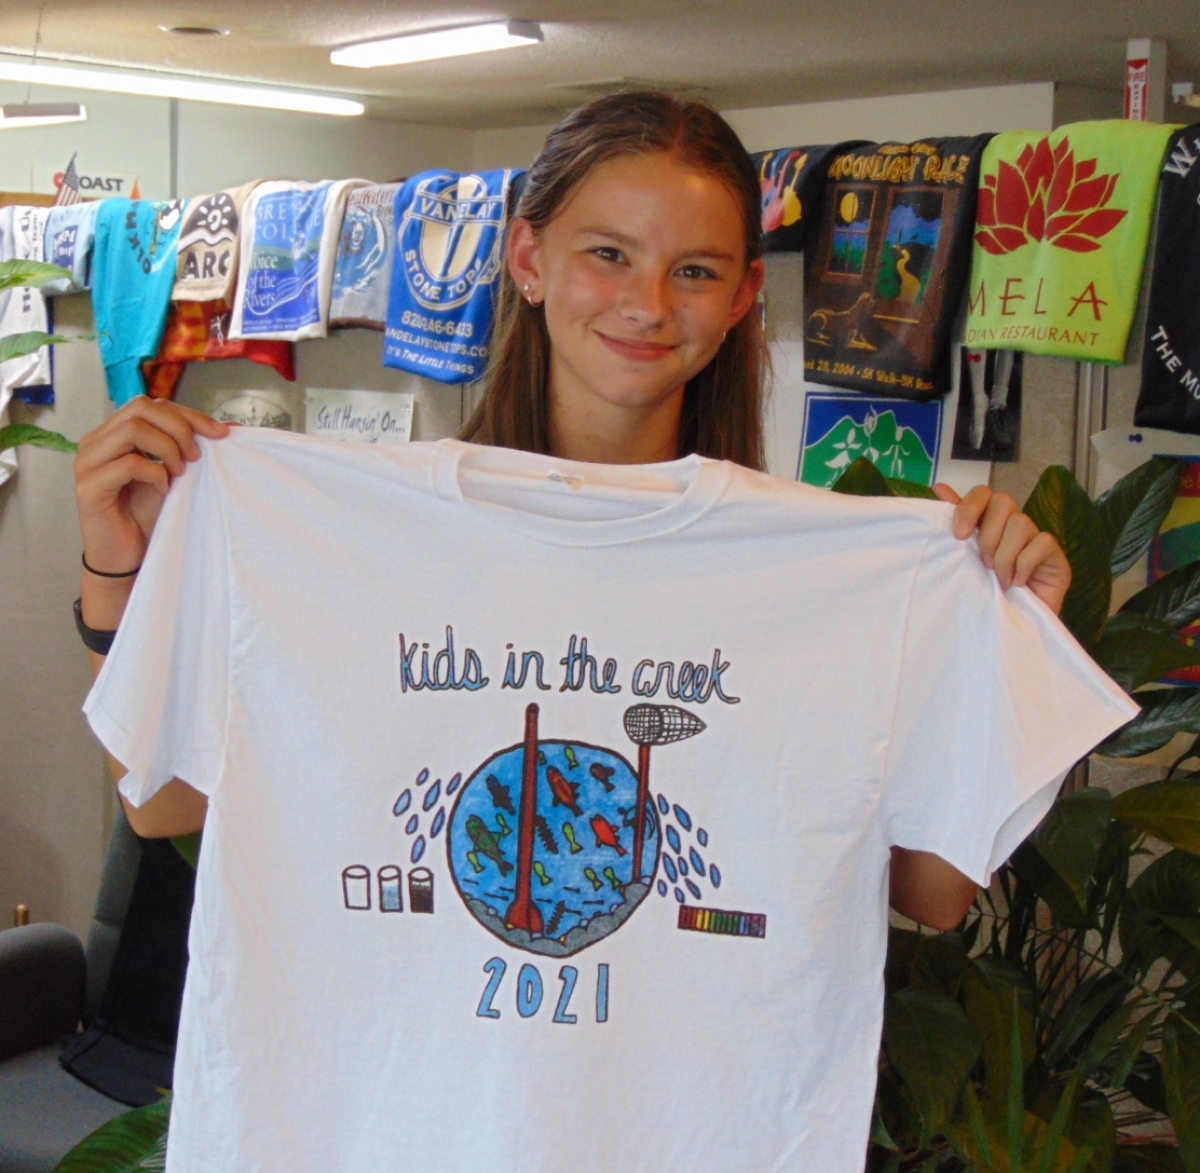 Winner announced for Kids in the Creek shirt design